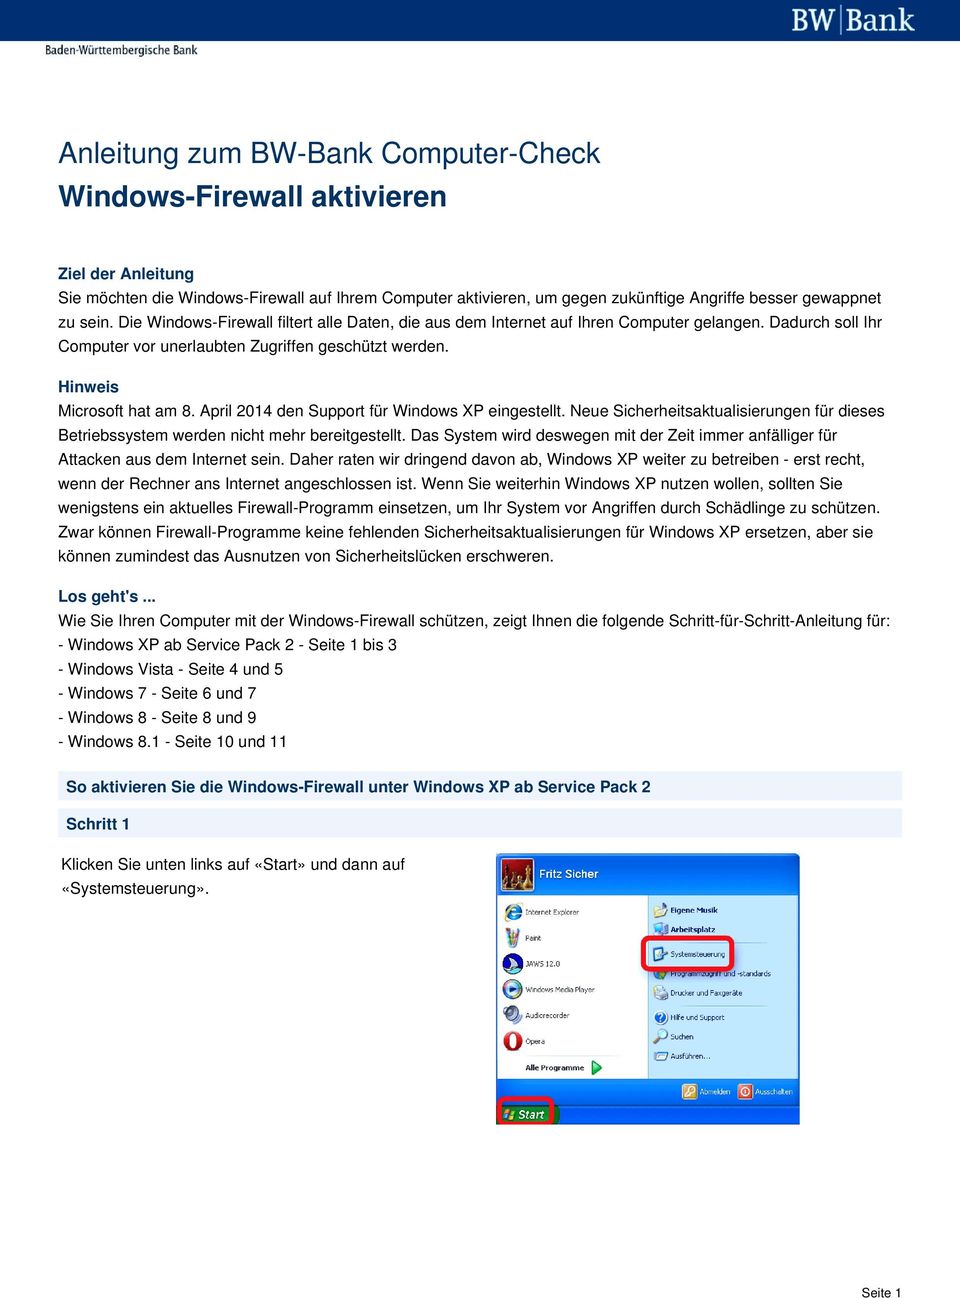 April 2014 den Support für Windows XP eingestellt. Neue Sicherheitsaktualisierungen für dieses Betriebssystem werden nicht mehr bereitgestellt.